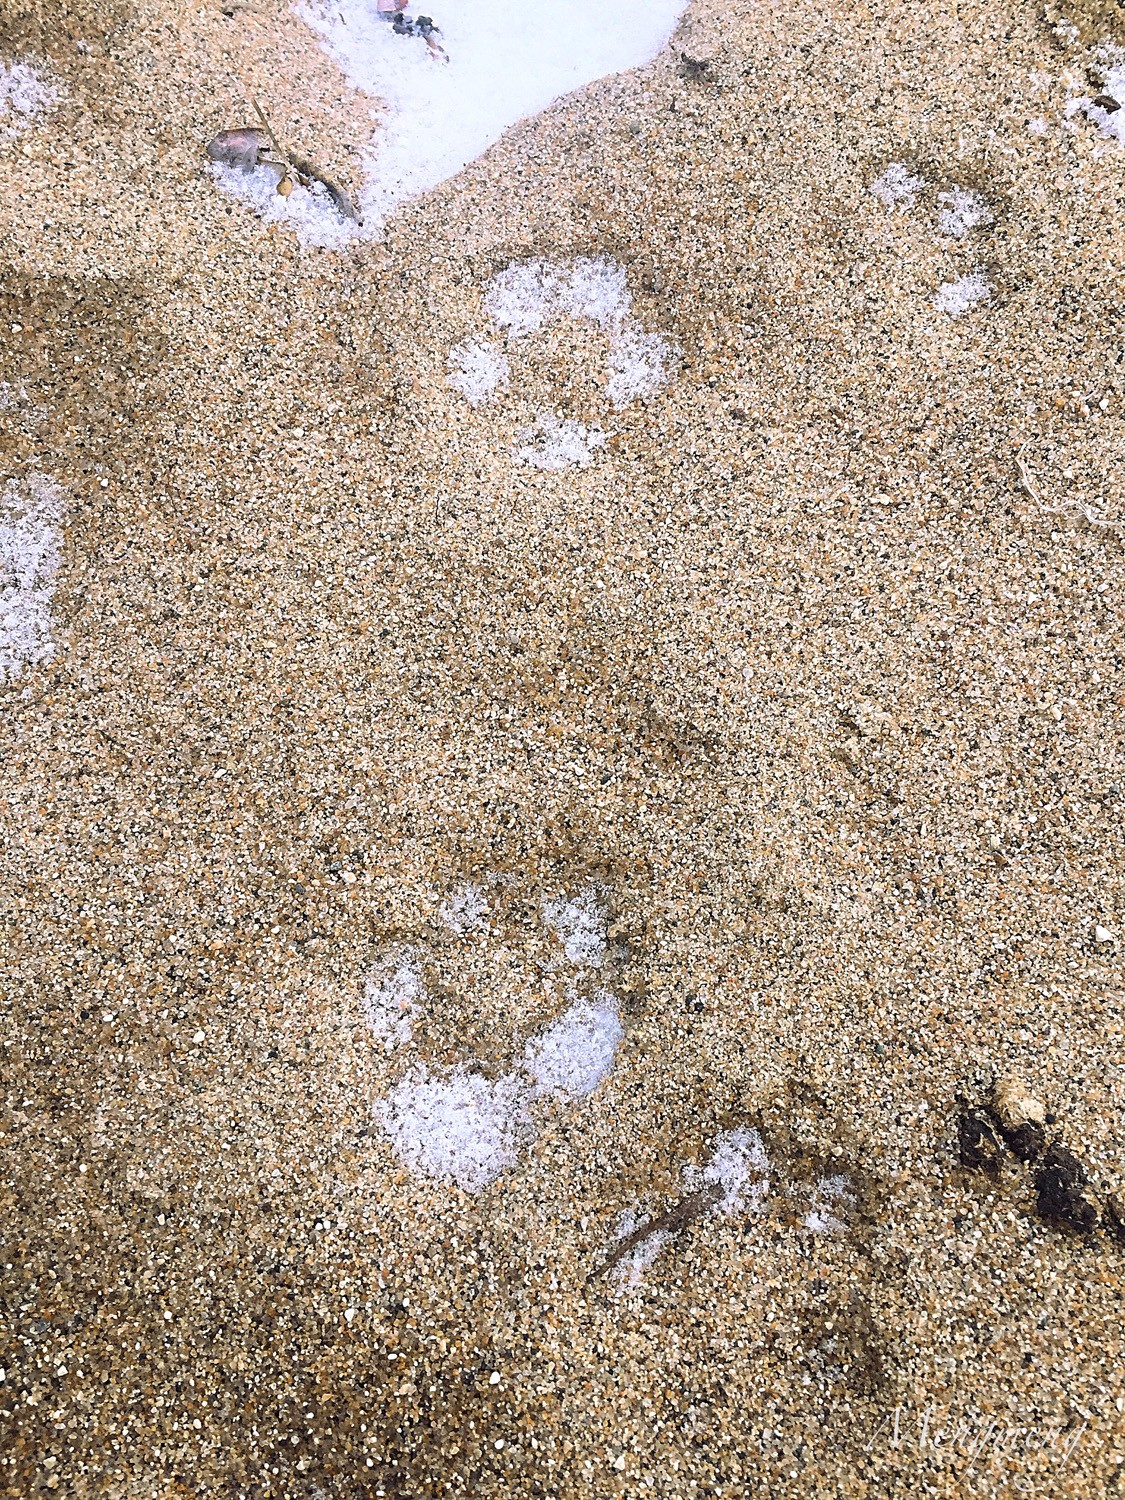 镇后海滩上北极狐的爪印.jpg